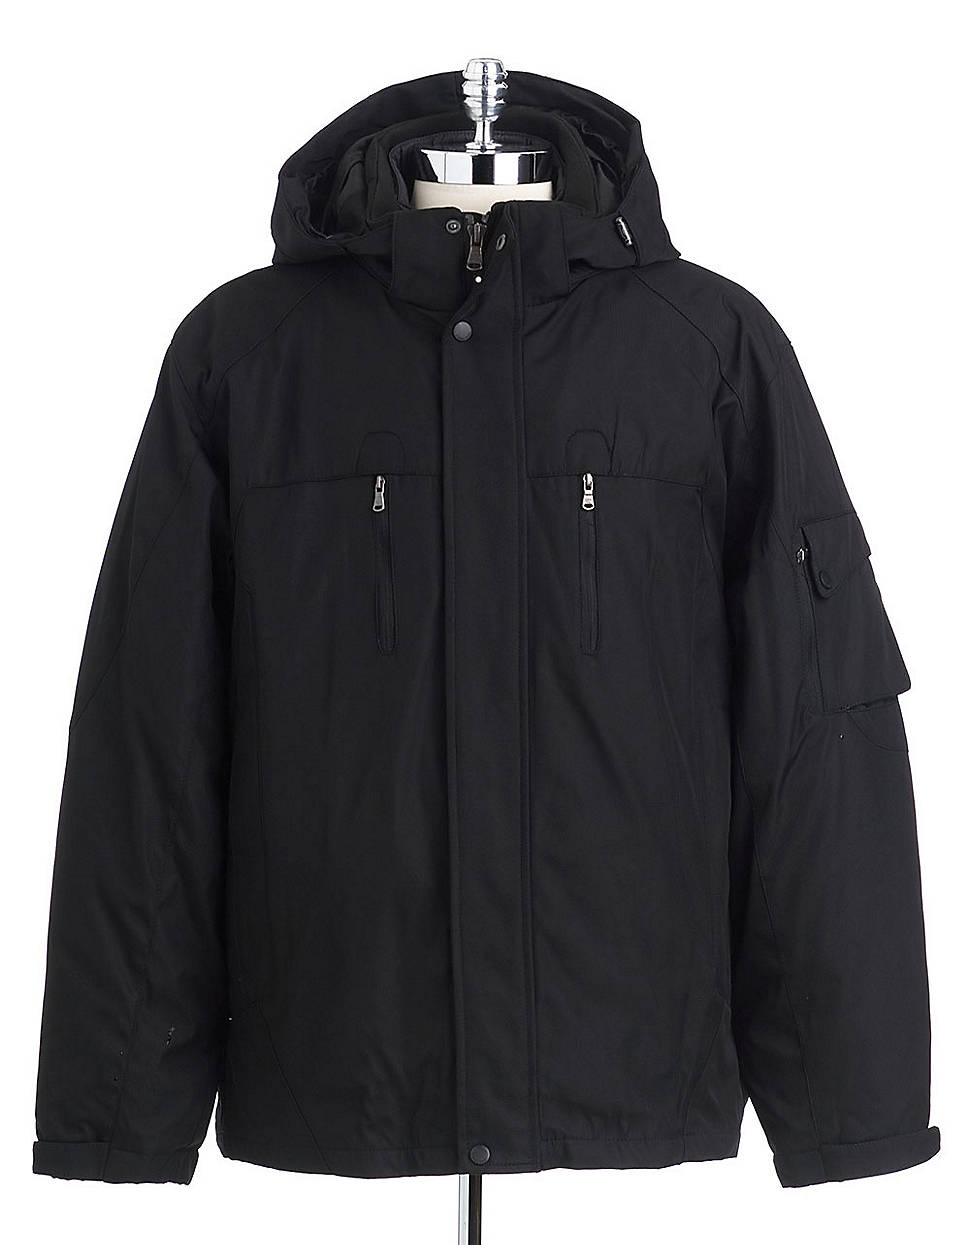 Calvin Klein Three- In- One Jacket in Black for Men - Lyst